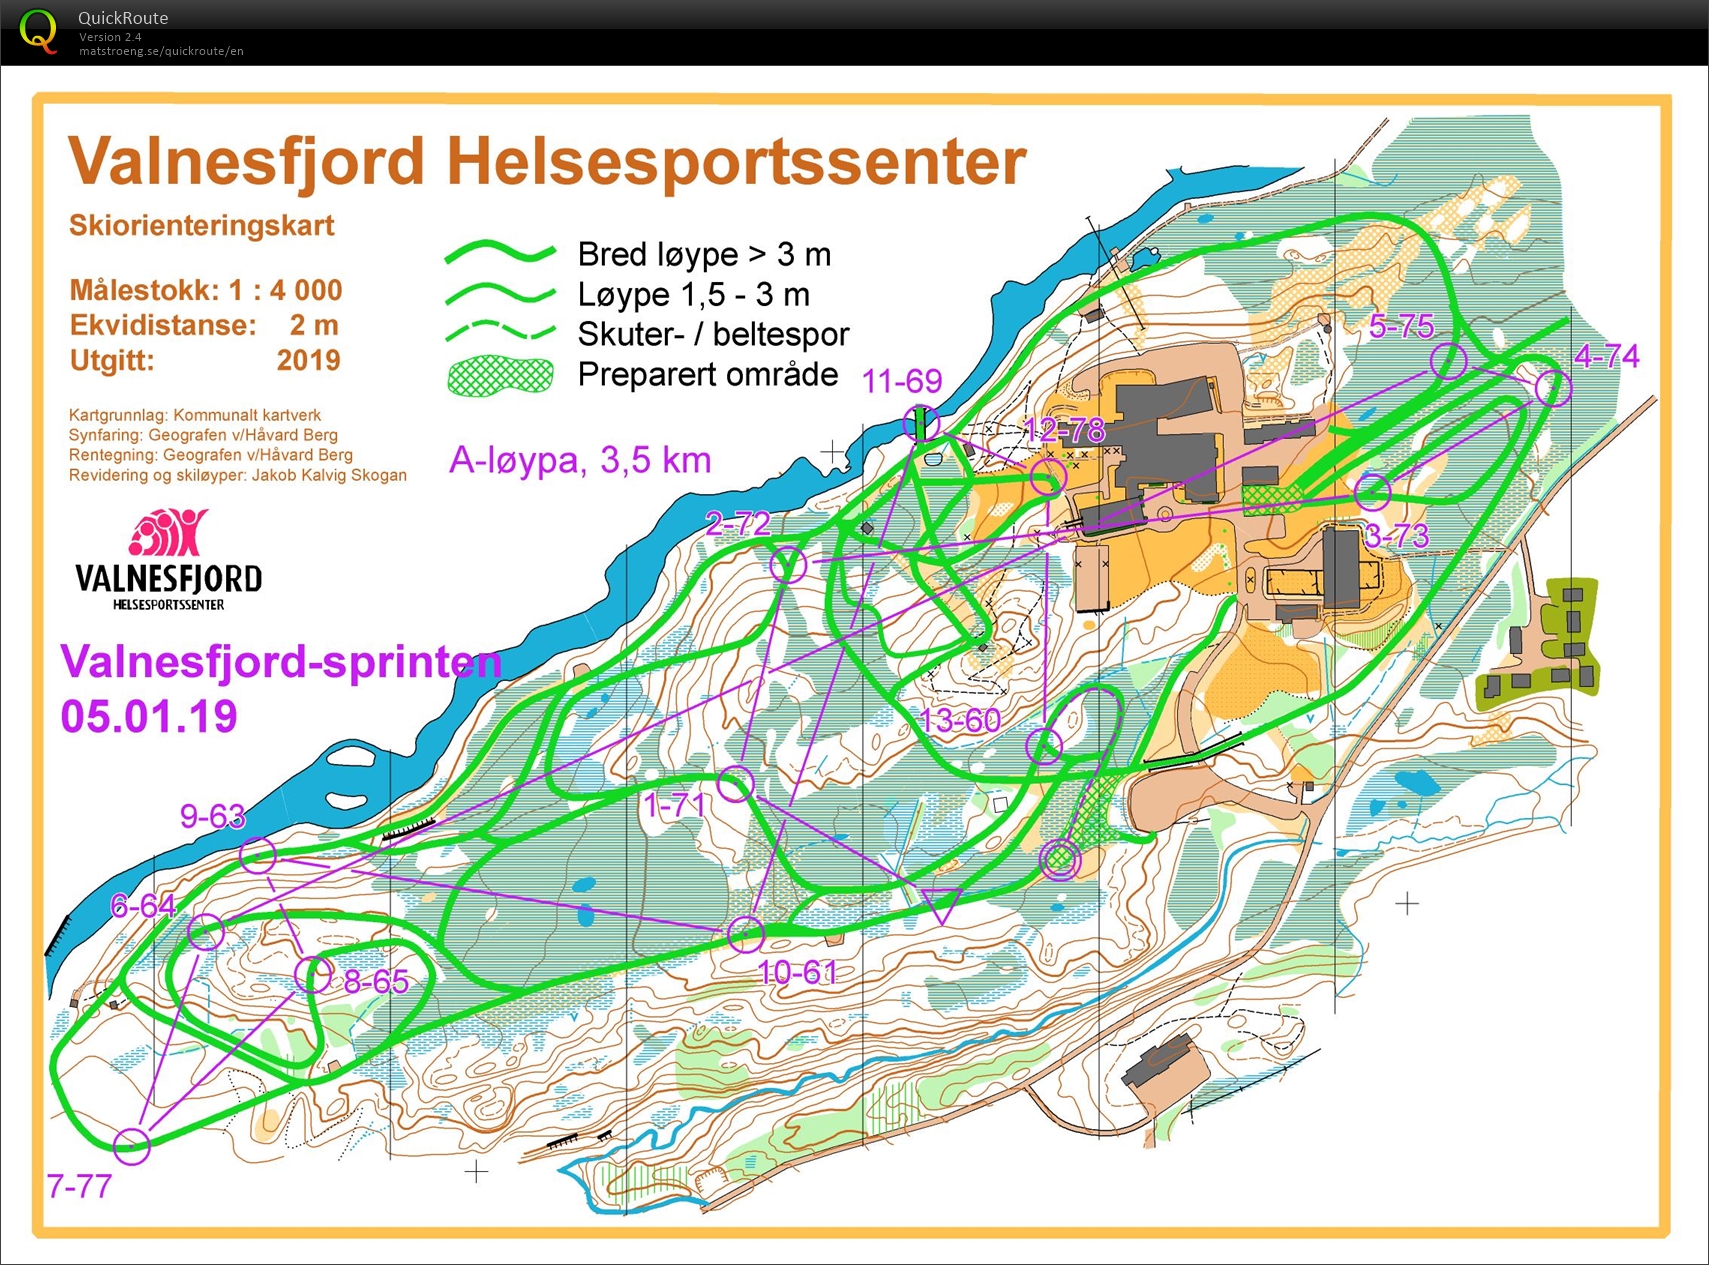 Valnesfjordsprinten Skiorientering (05/01/2020)